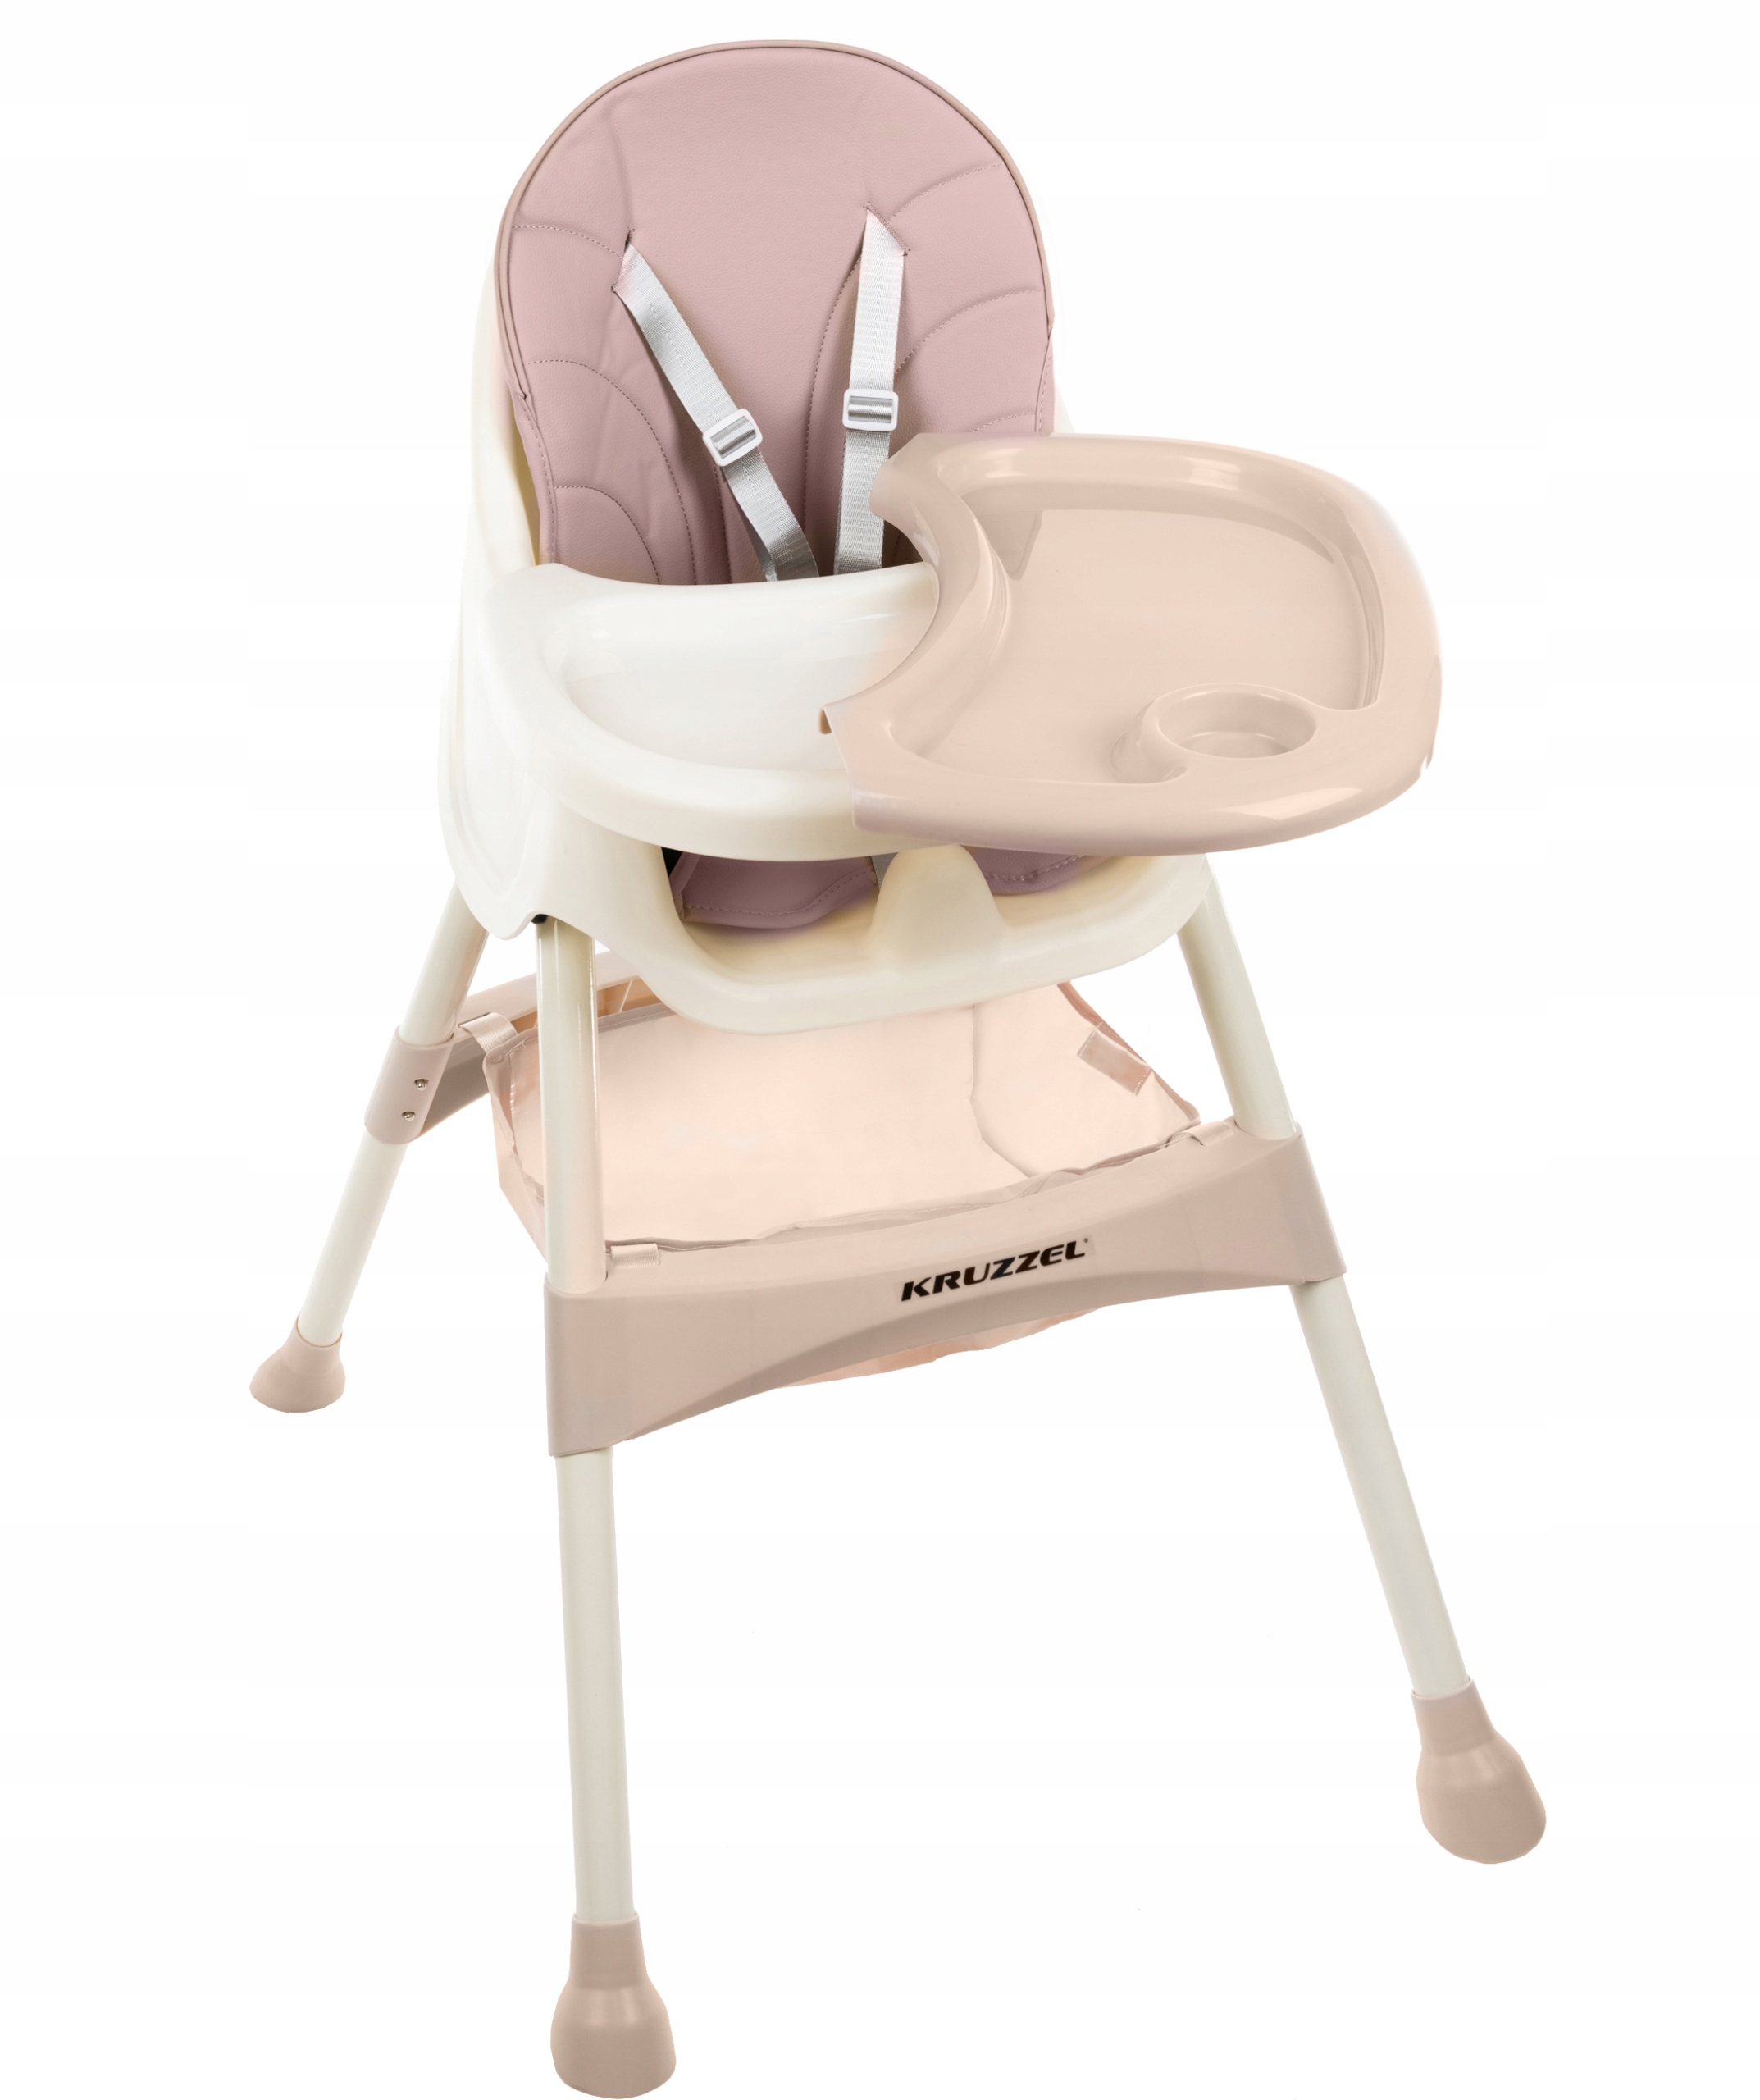 Дитячий стільчик для годування 3в1. Сидіння підносу. Колір відтінків рожевого